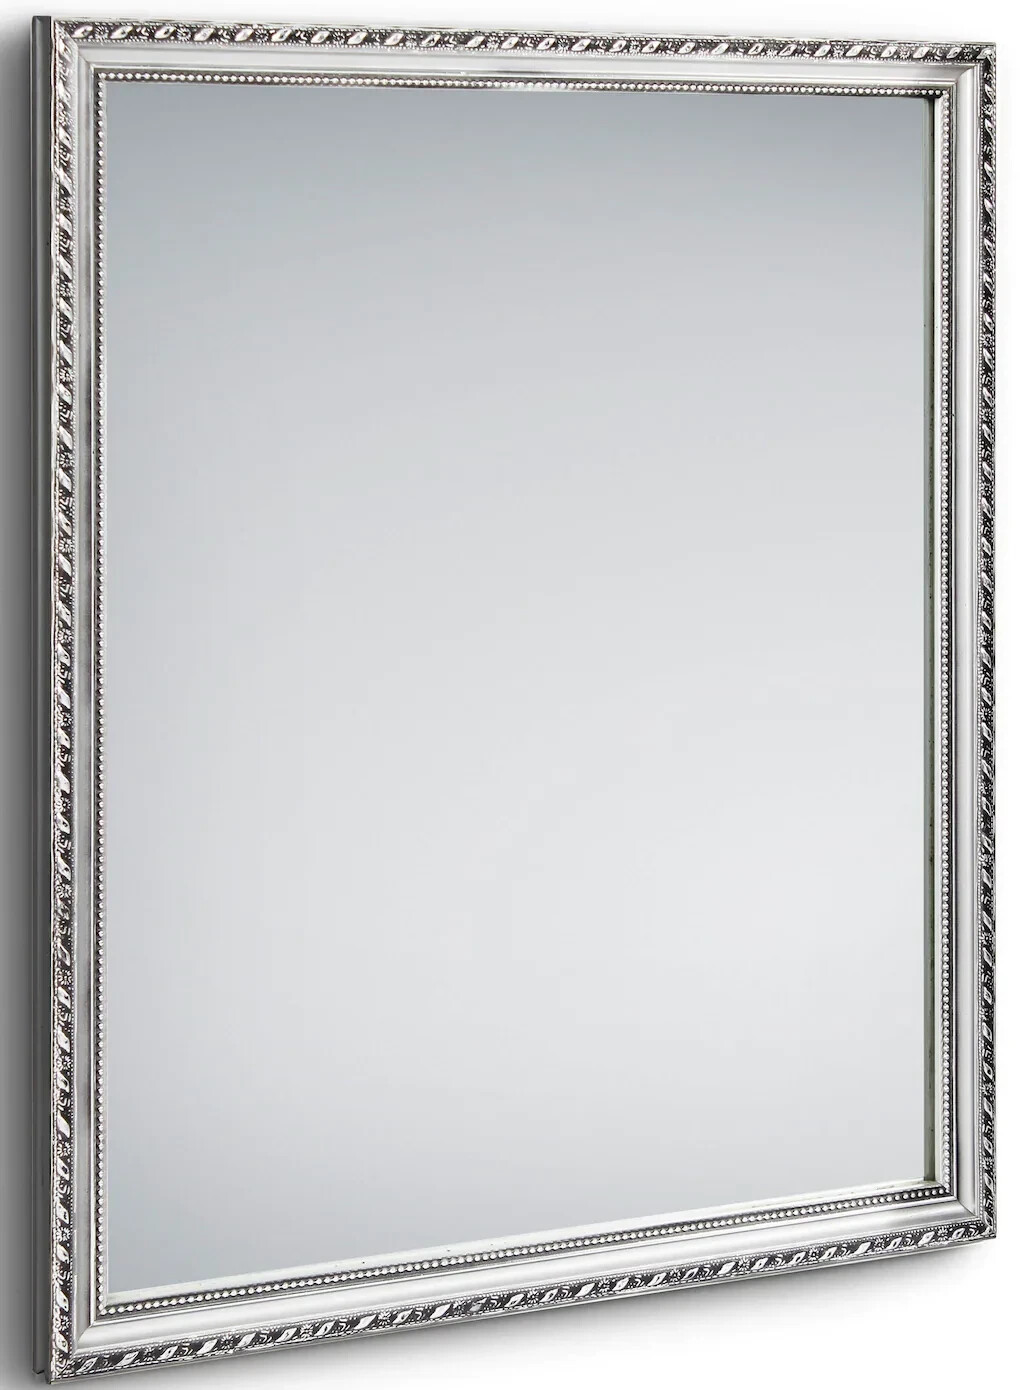 Mirrors and More Wandspiegel LOLA mit Rahmen in Silber 34x45cm ab 24,95 € |  Preisvergleich bei